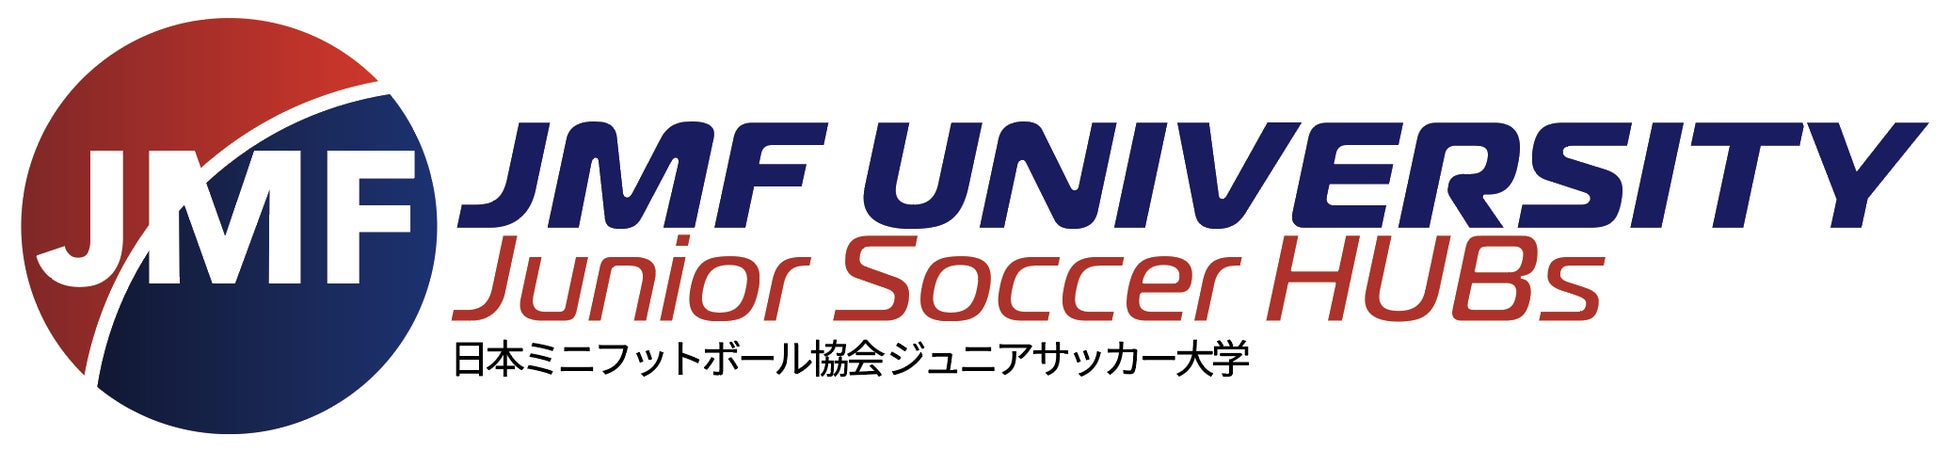 3月12日(日)に渋谷で実施されるサッカーフェス「FOOTBALL JAM 2021」で優勝賞金100万円の3人制サッカー大会が開催！一般チームも募集中